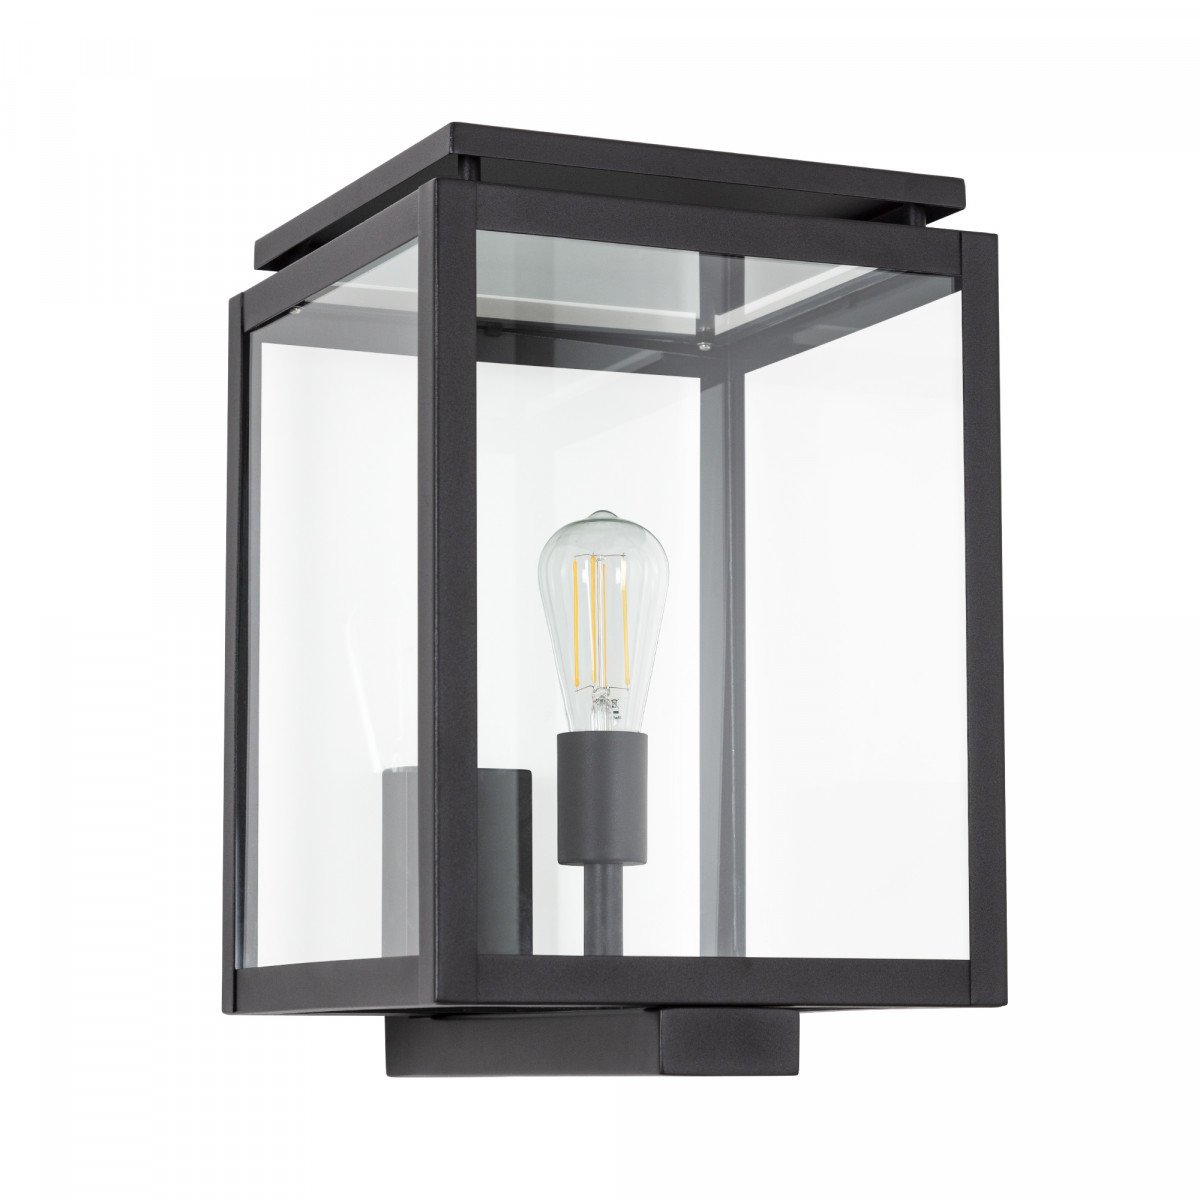 Buitenverlichting, buitenlamp Vecht XL, een origineel stijlvol tijdloos KS buitenlamp, de perfecte gevellamp, zwart strak klassieke gevelverlichting van KS Verlichting